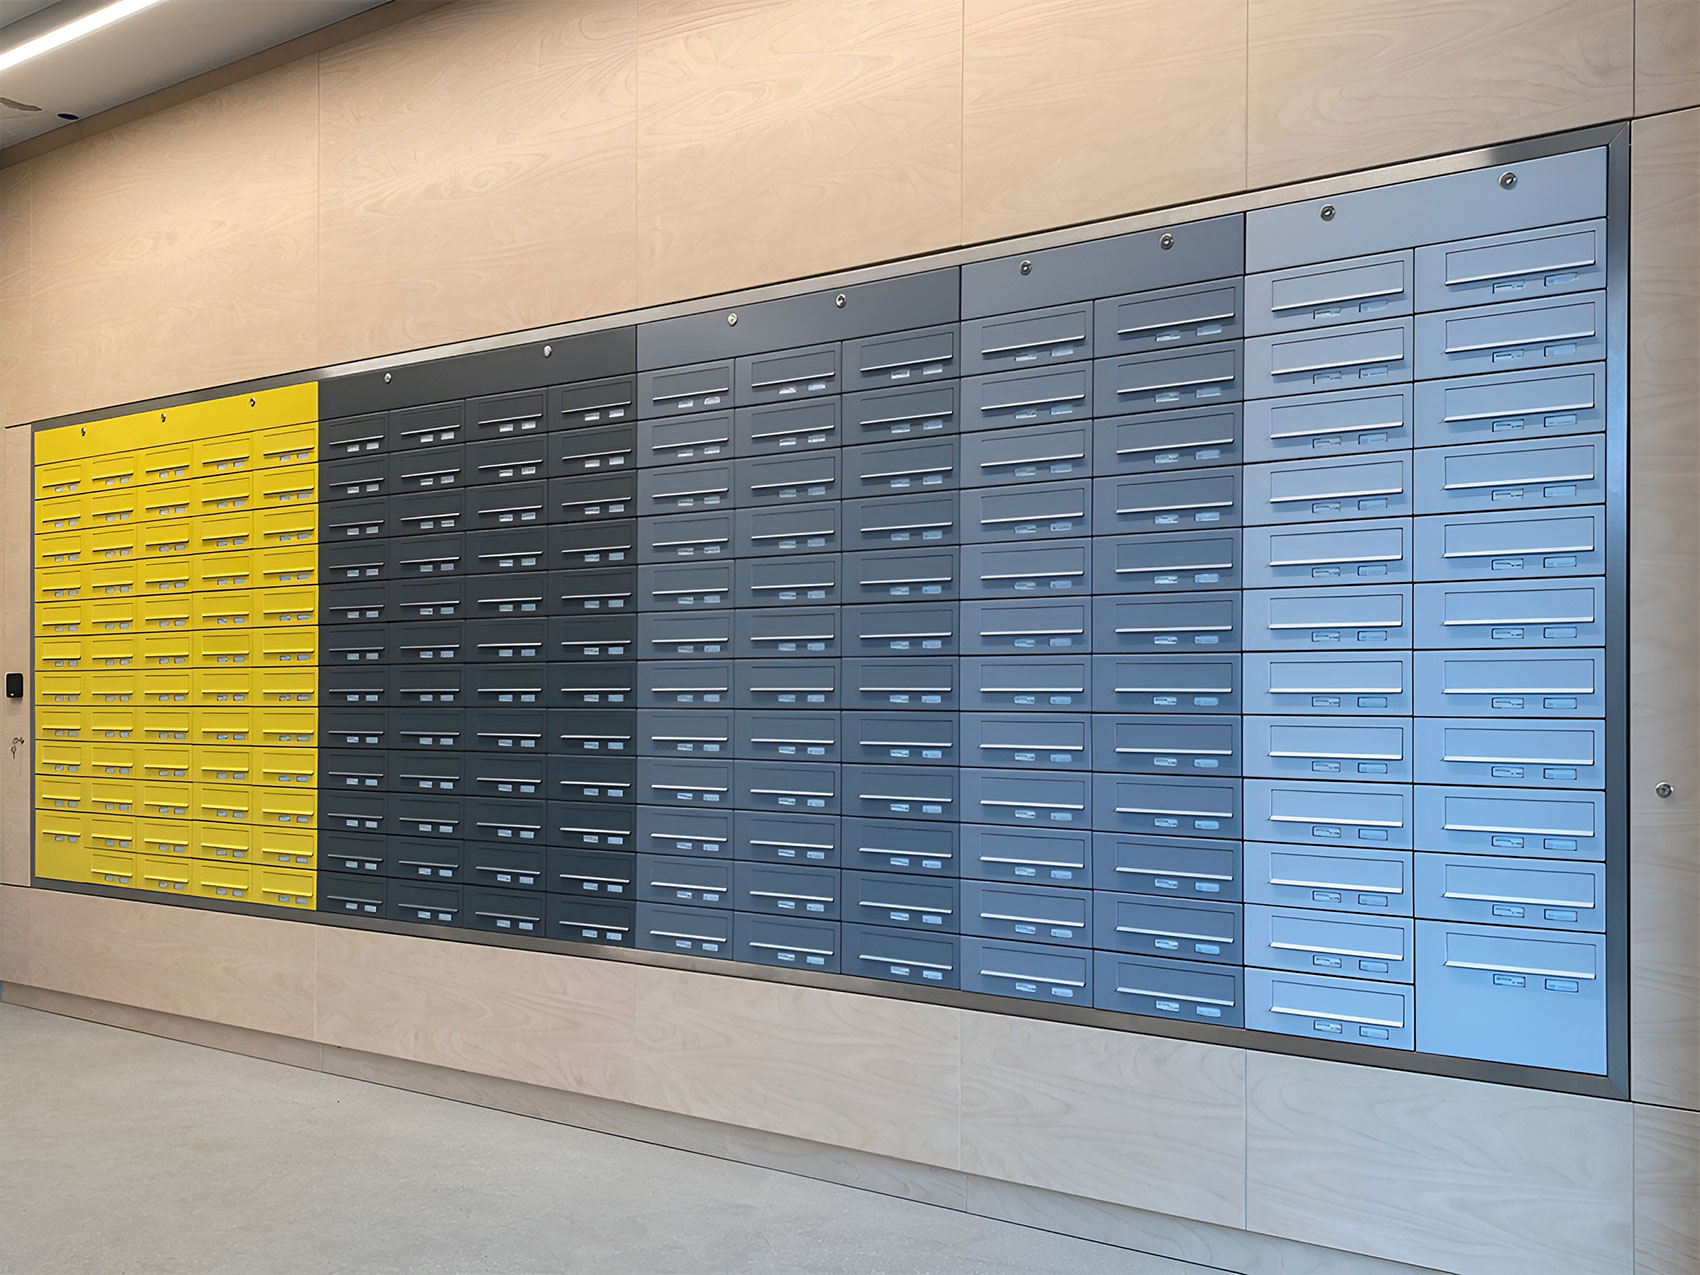 Das Profilbild des Briefkastenherstellers Allebacker Schulte GmbH in Deutschland zeigt eine große, mehrfarbige Briefkastenanlage für Mehrfamilienhäuser. Das Briefkastensystem besteht aus über 200 Briefkästen.